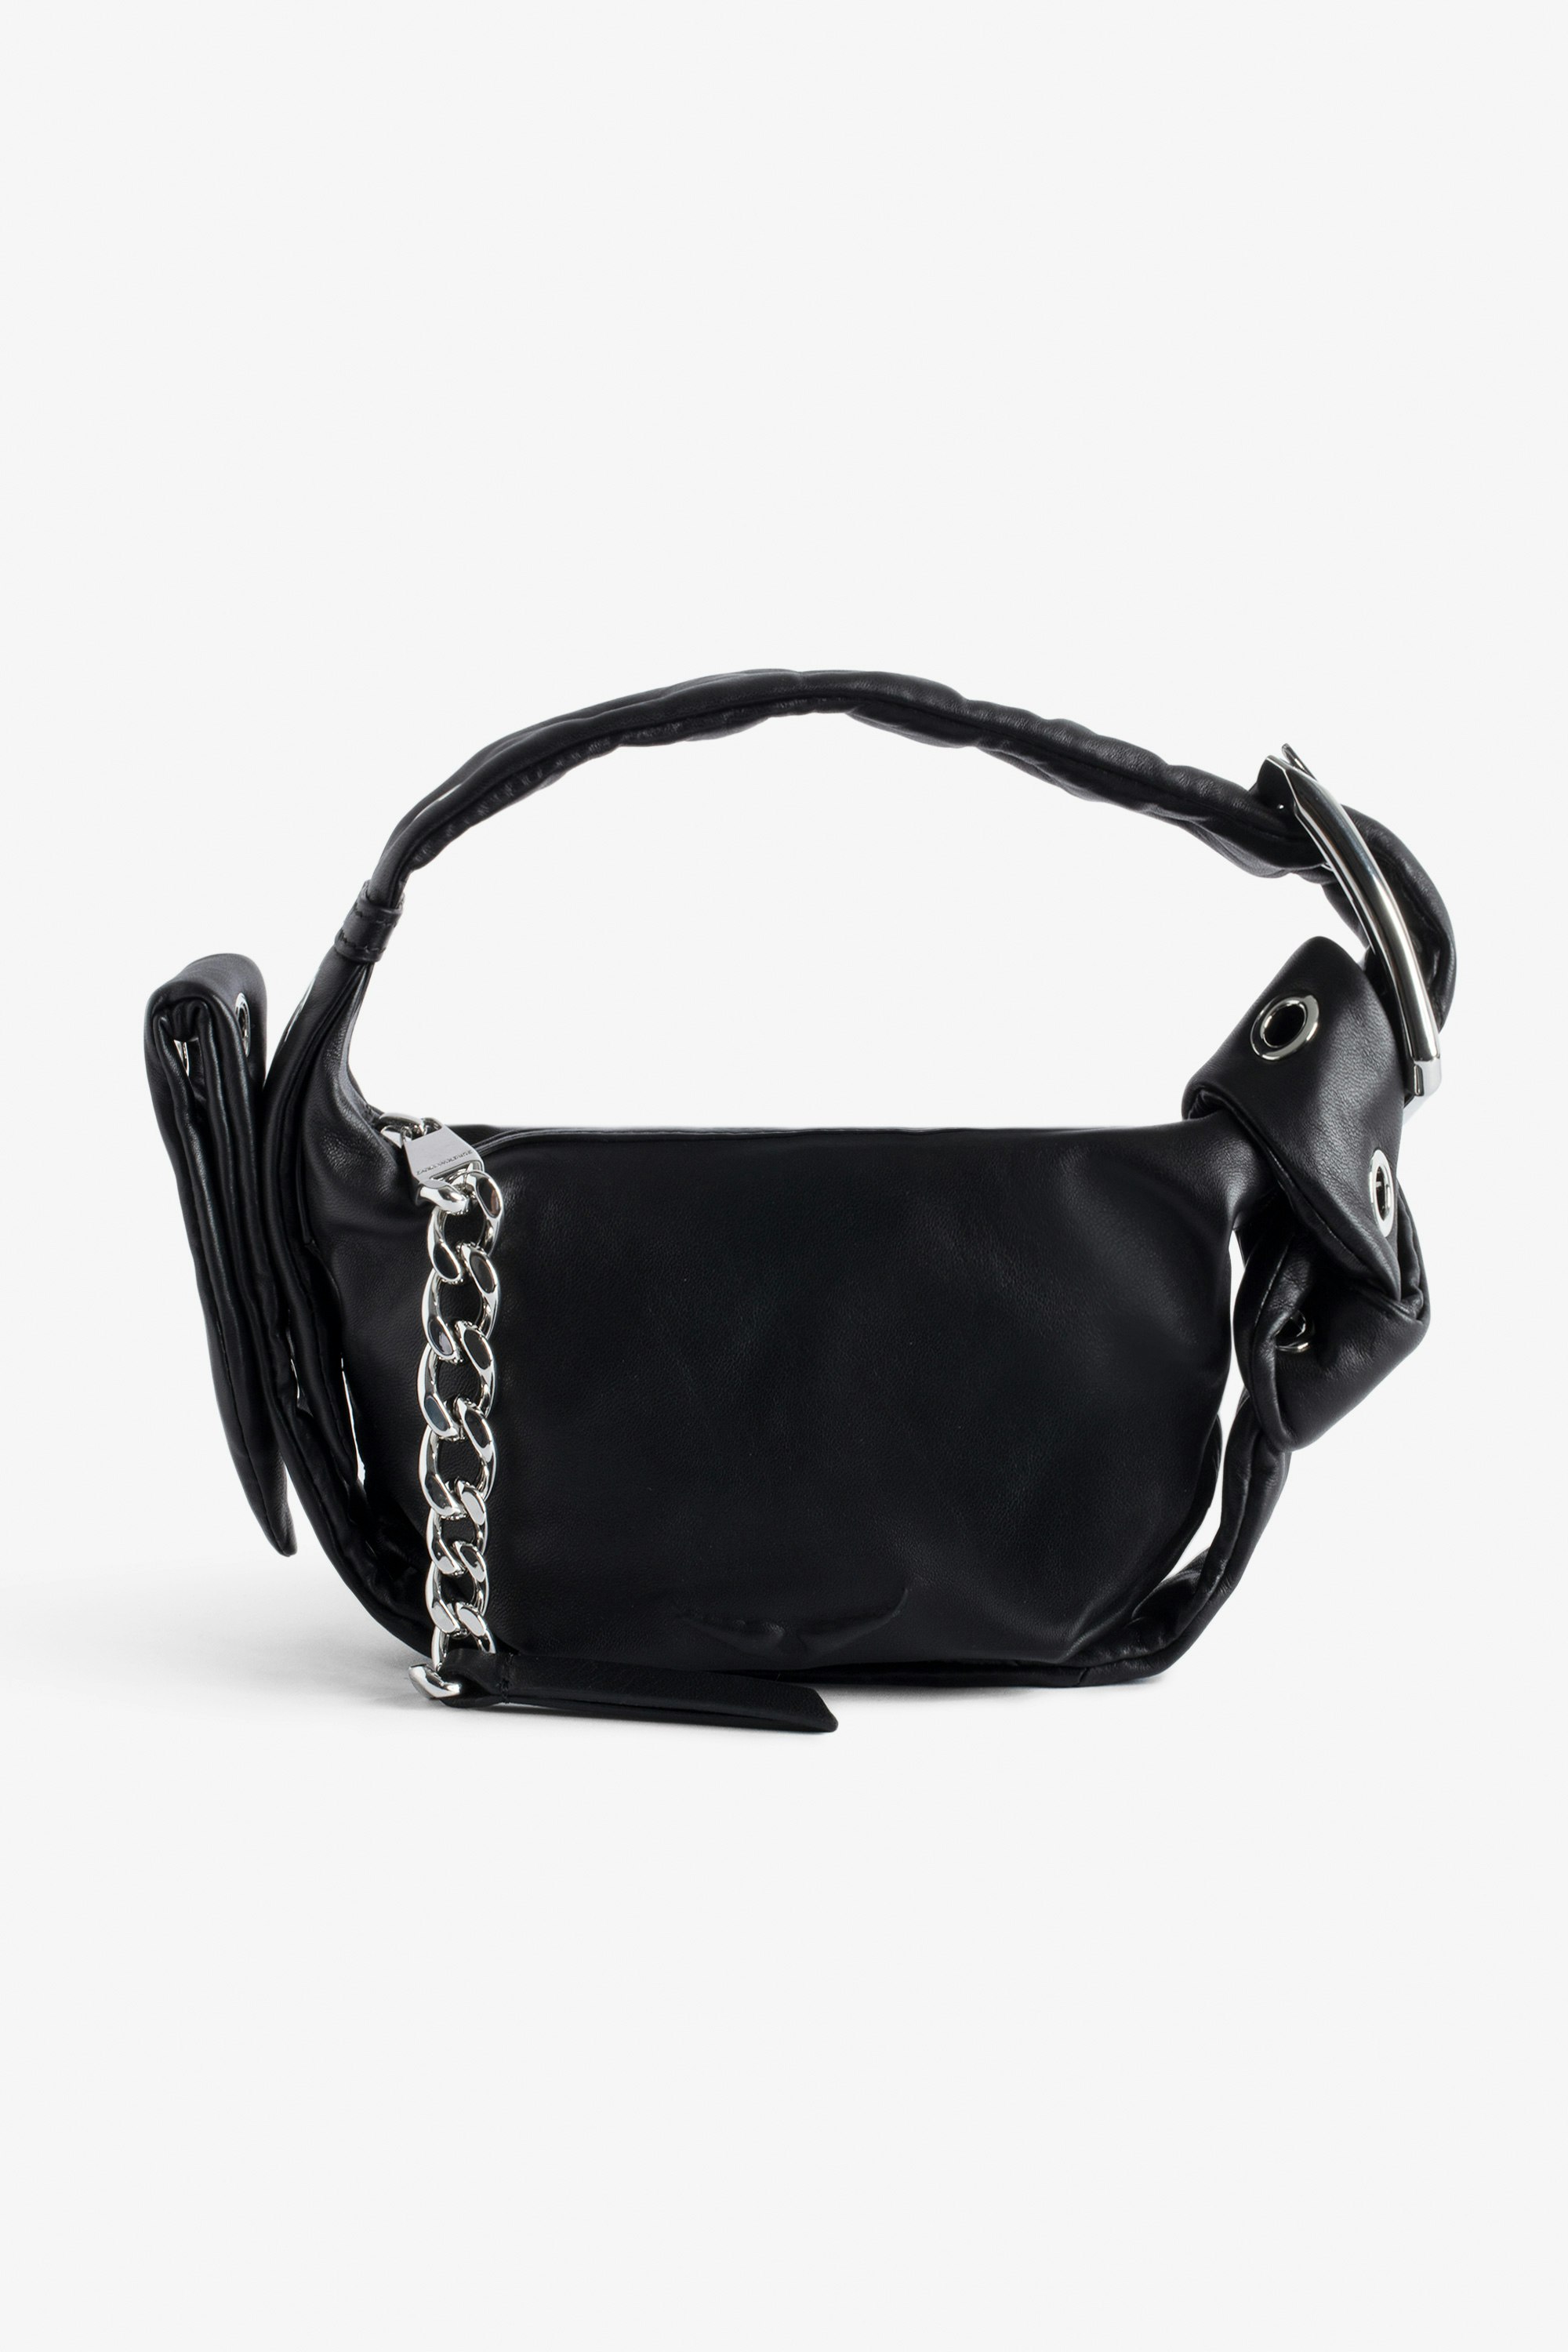 Borsa Le Cecilia XS Obsession Piccola borsa in pelle liscia nera con tracolla e fibbia in metallo a C da donna.